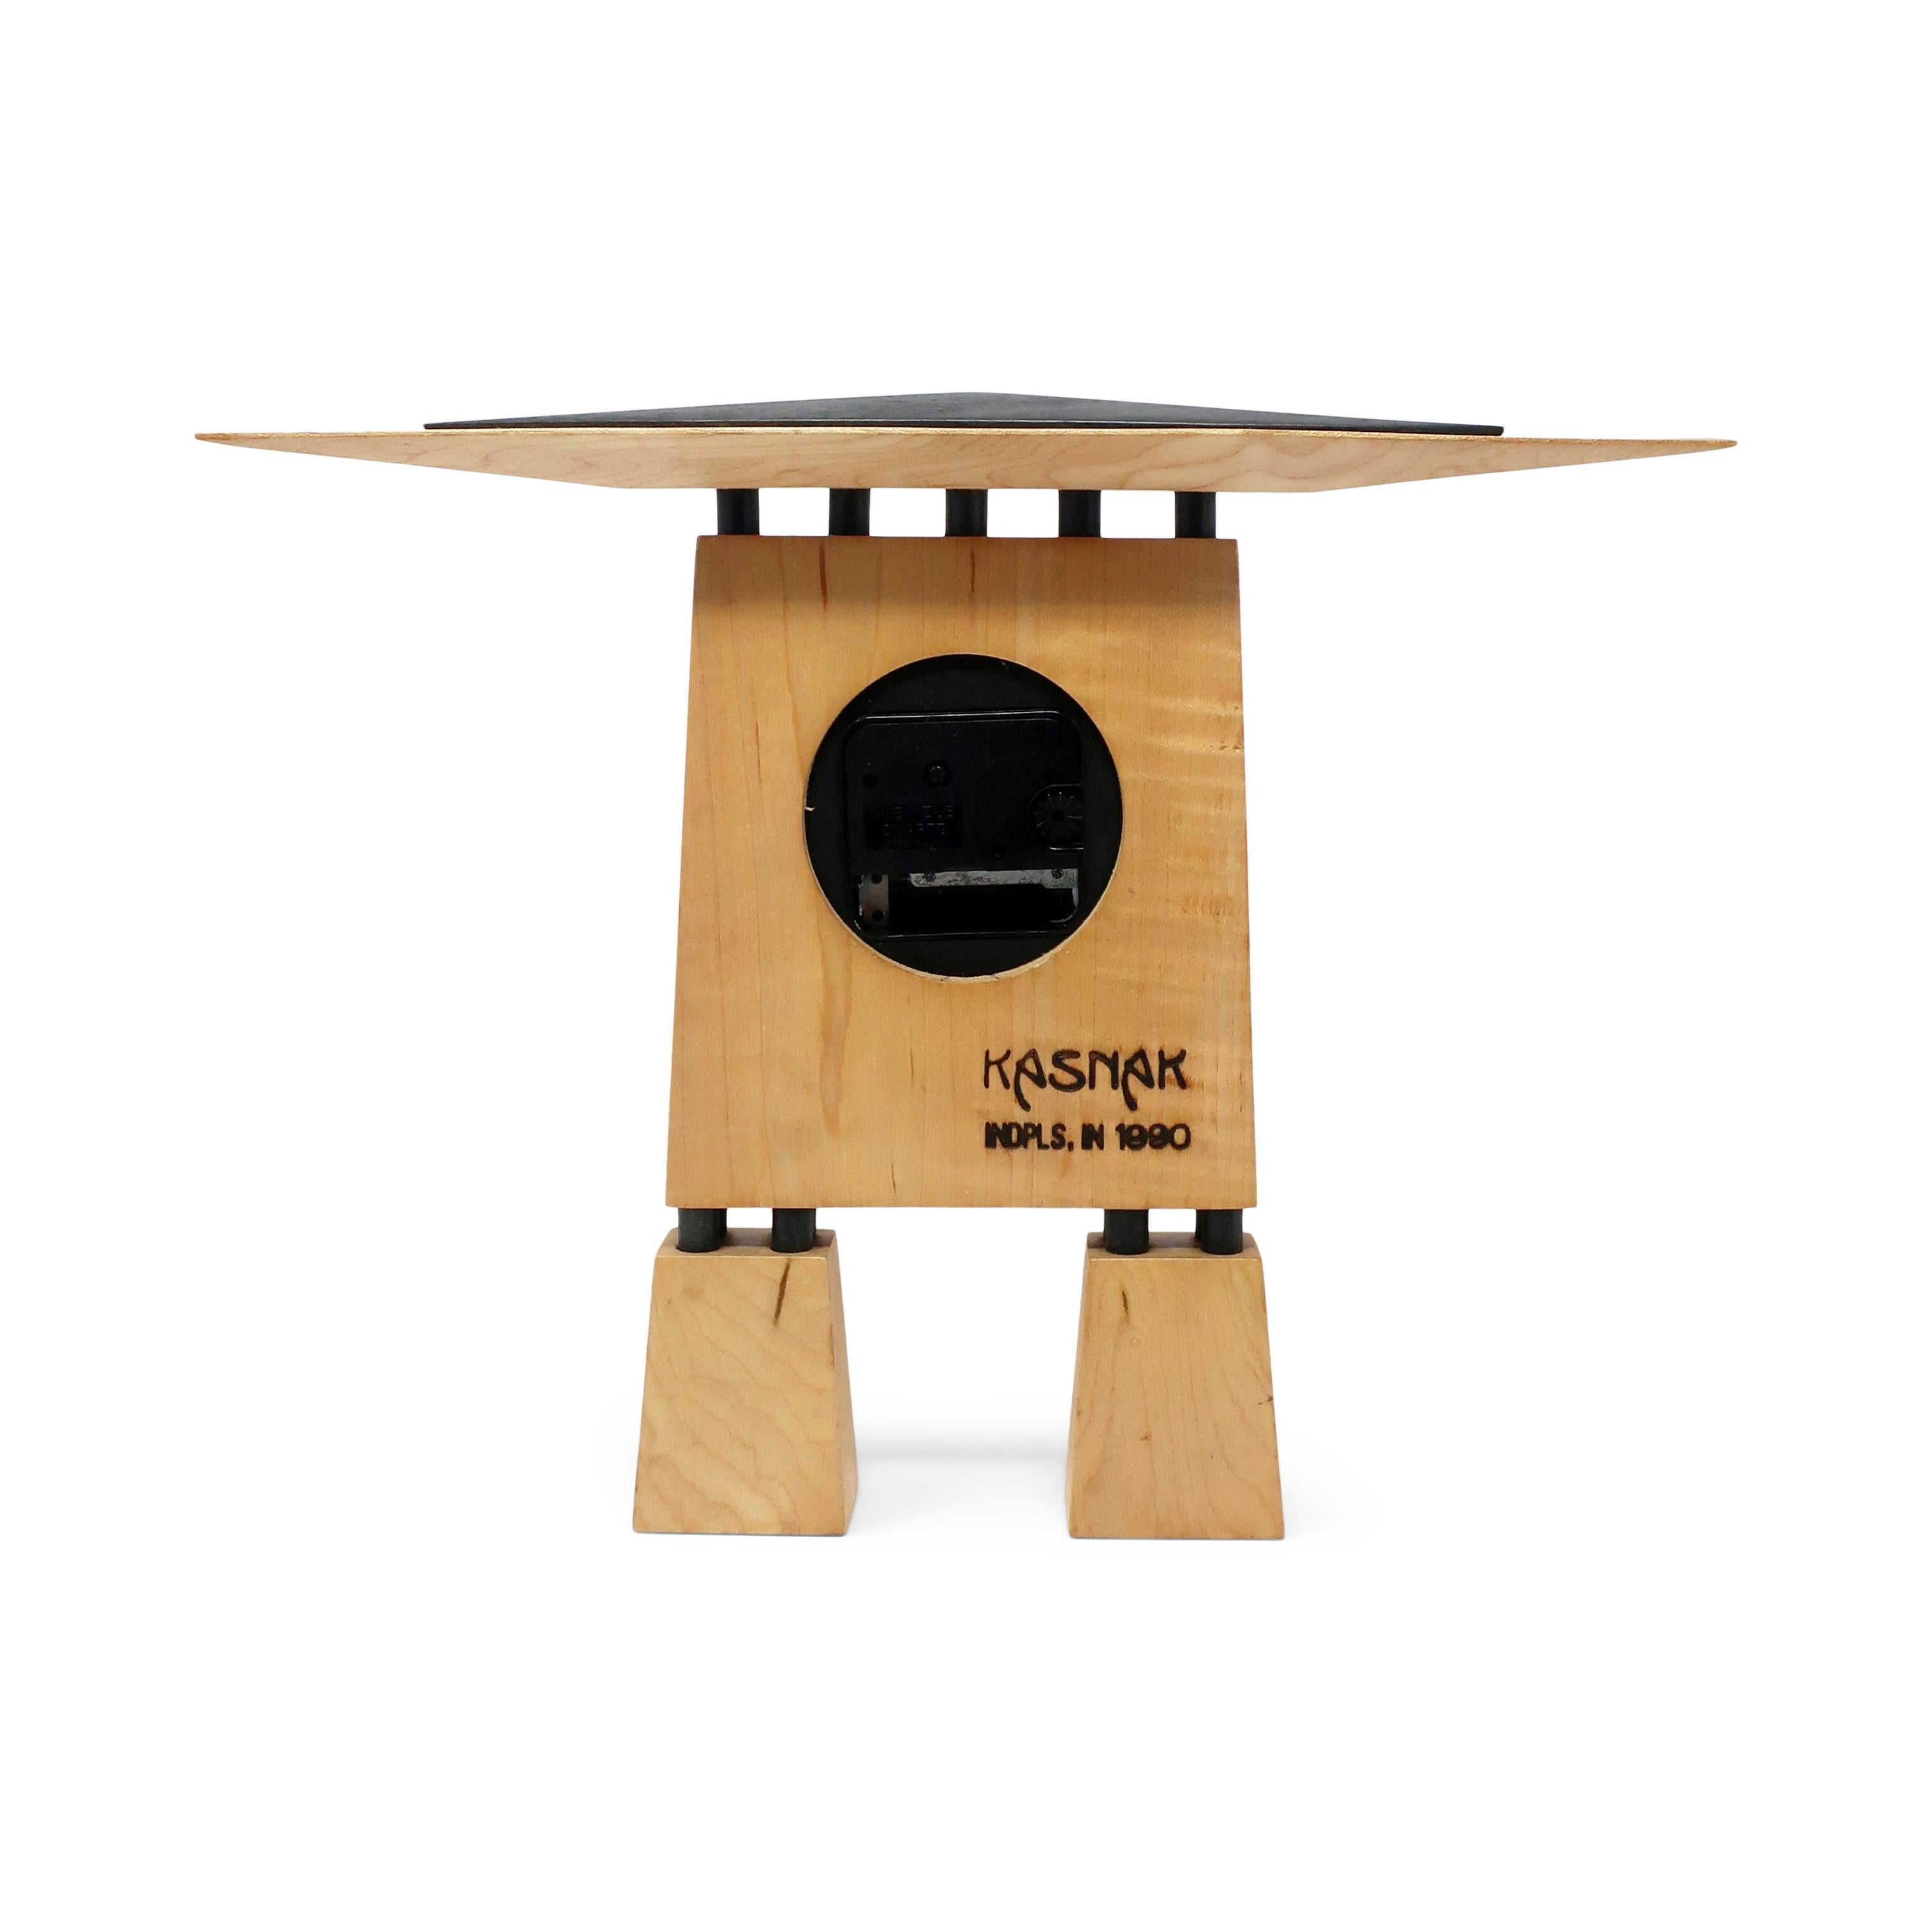 1990 Handmade Wood Prairie Clock by Kasnak Designs For Sale 3